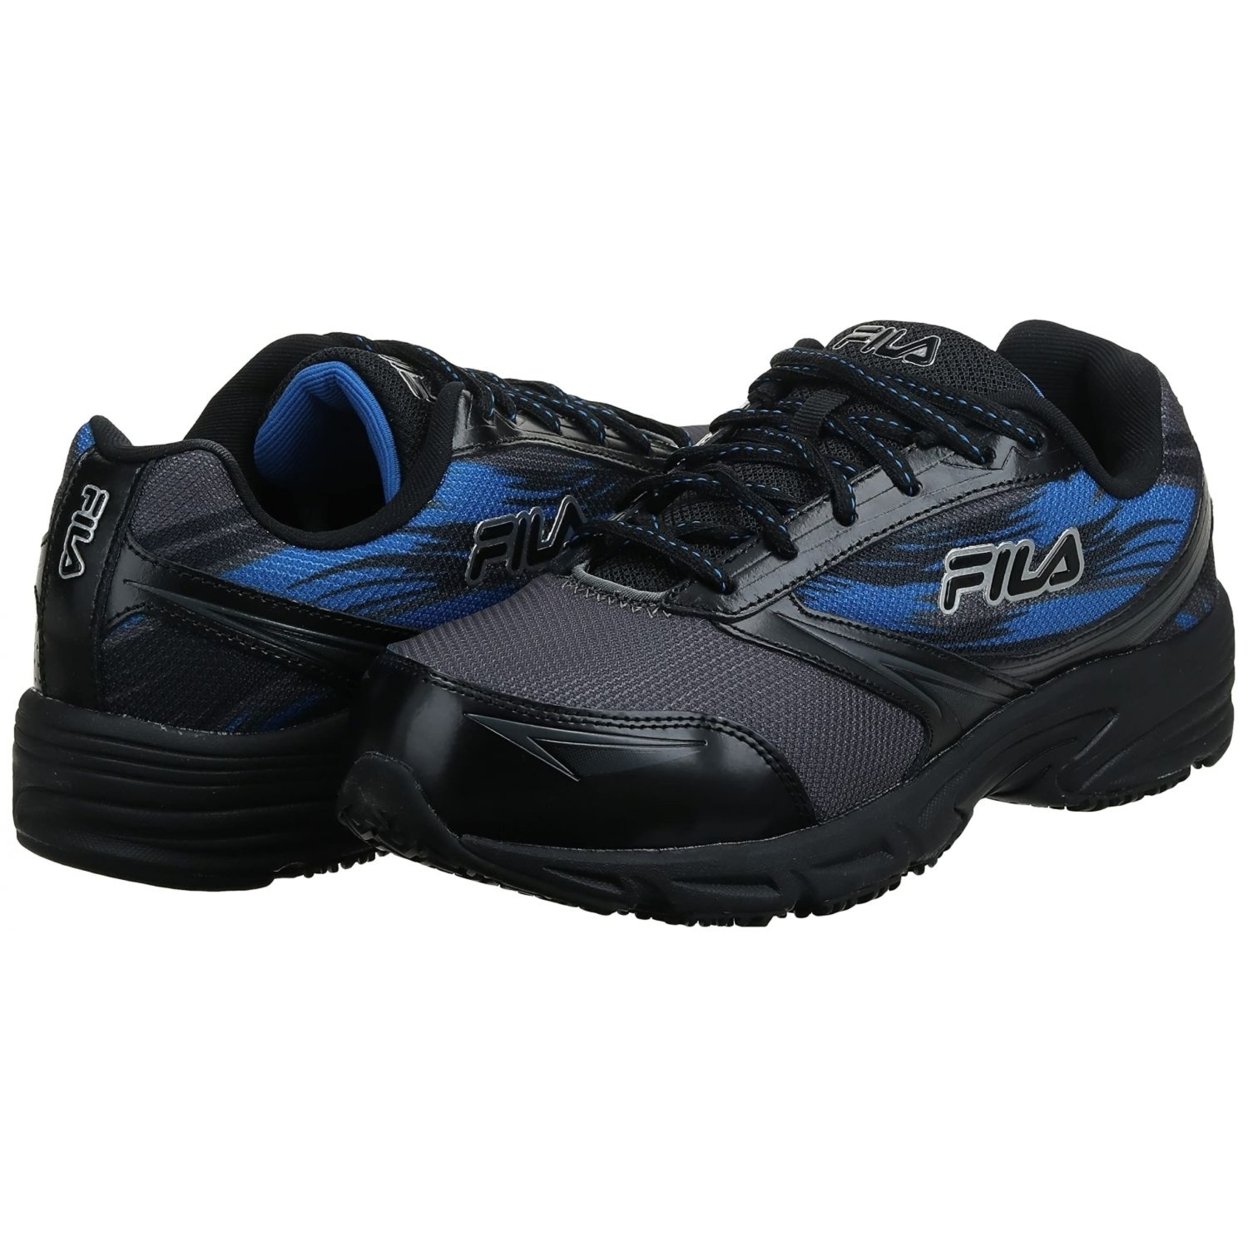 Fila Menâs Memory Meiera 2 Slip Resistant And Composite Toe Work Shoe CSRK/BLK/PRBL - Castlerock/Black/Prince Blue, 8